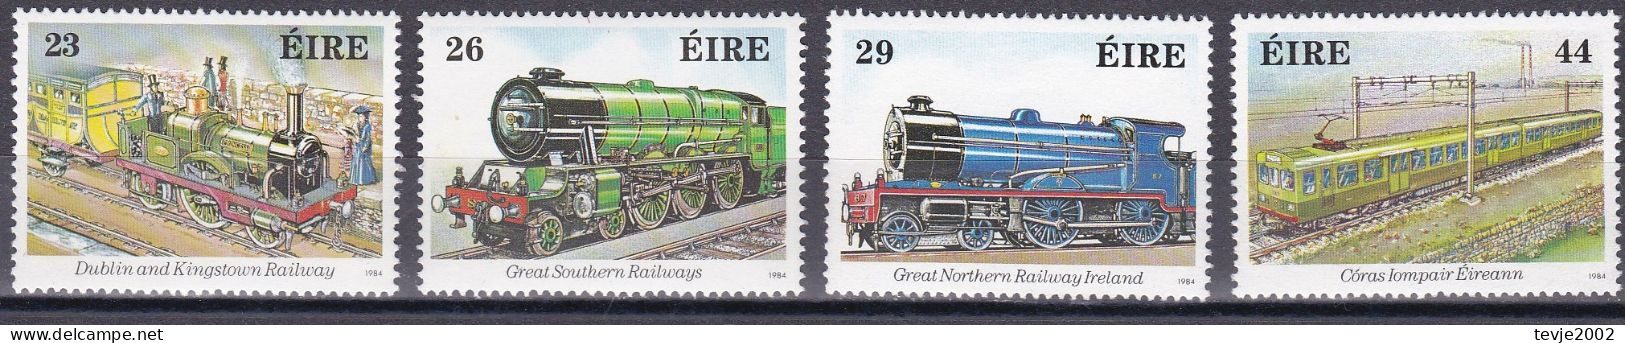 Irland Eire 1984 - Mi.Nr. 528 - 531 - Postfrisch MNH - Eisenbahnen Railways - Treni